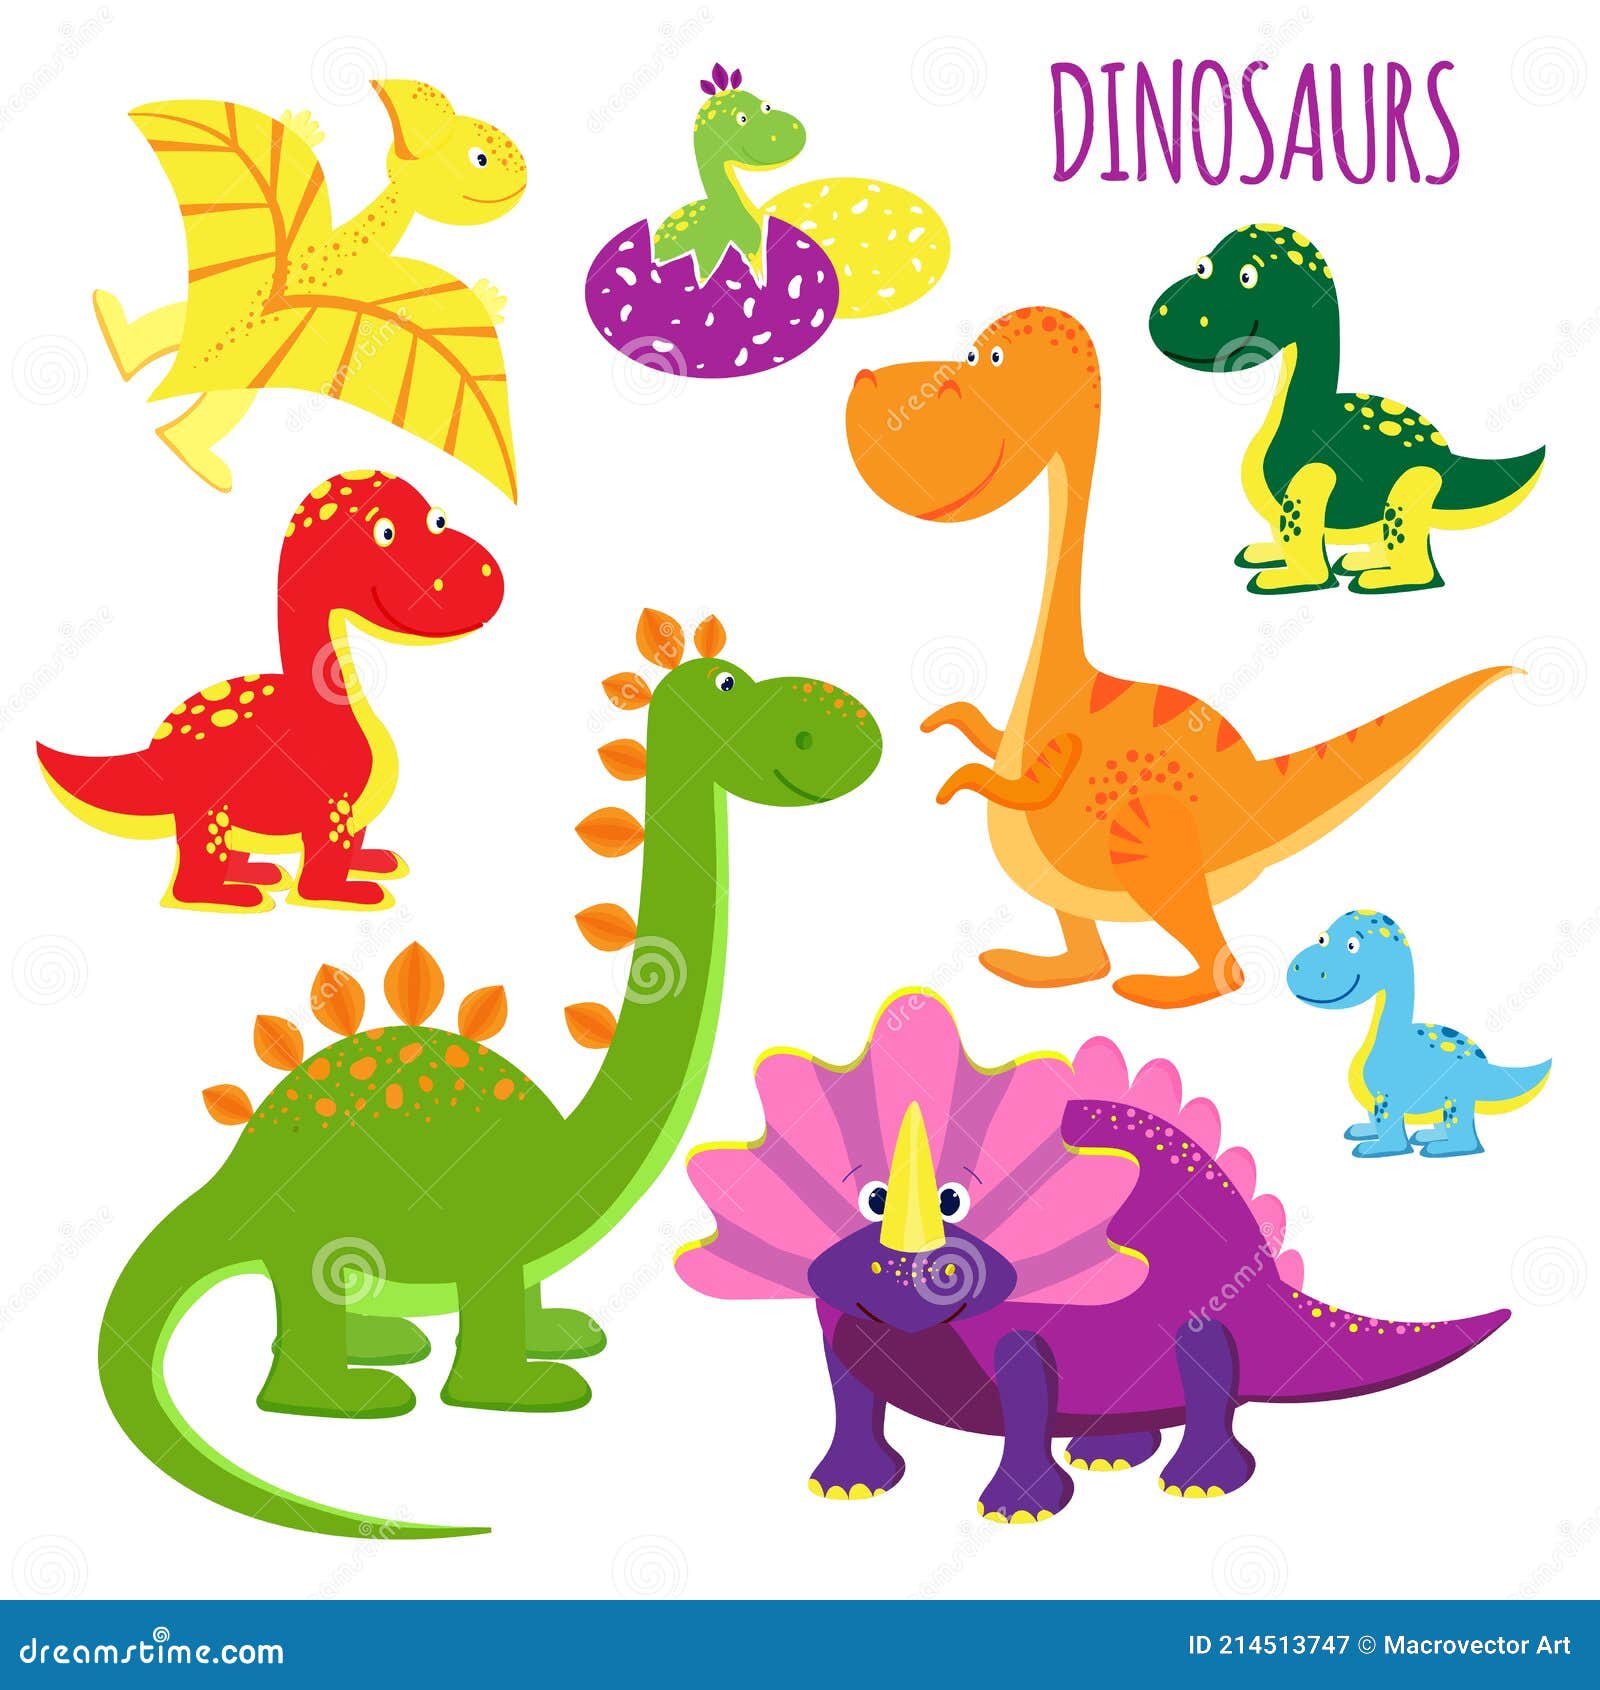 Динозавры иллюстрации векторные для детей